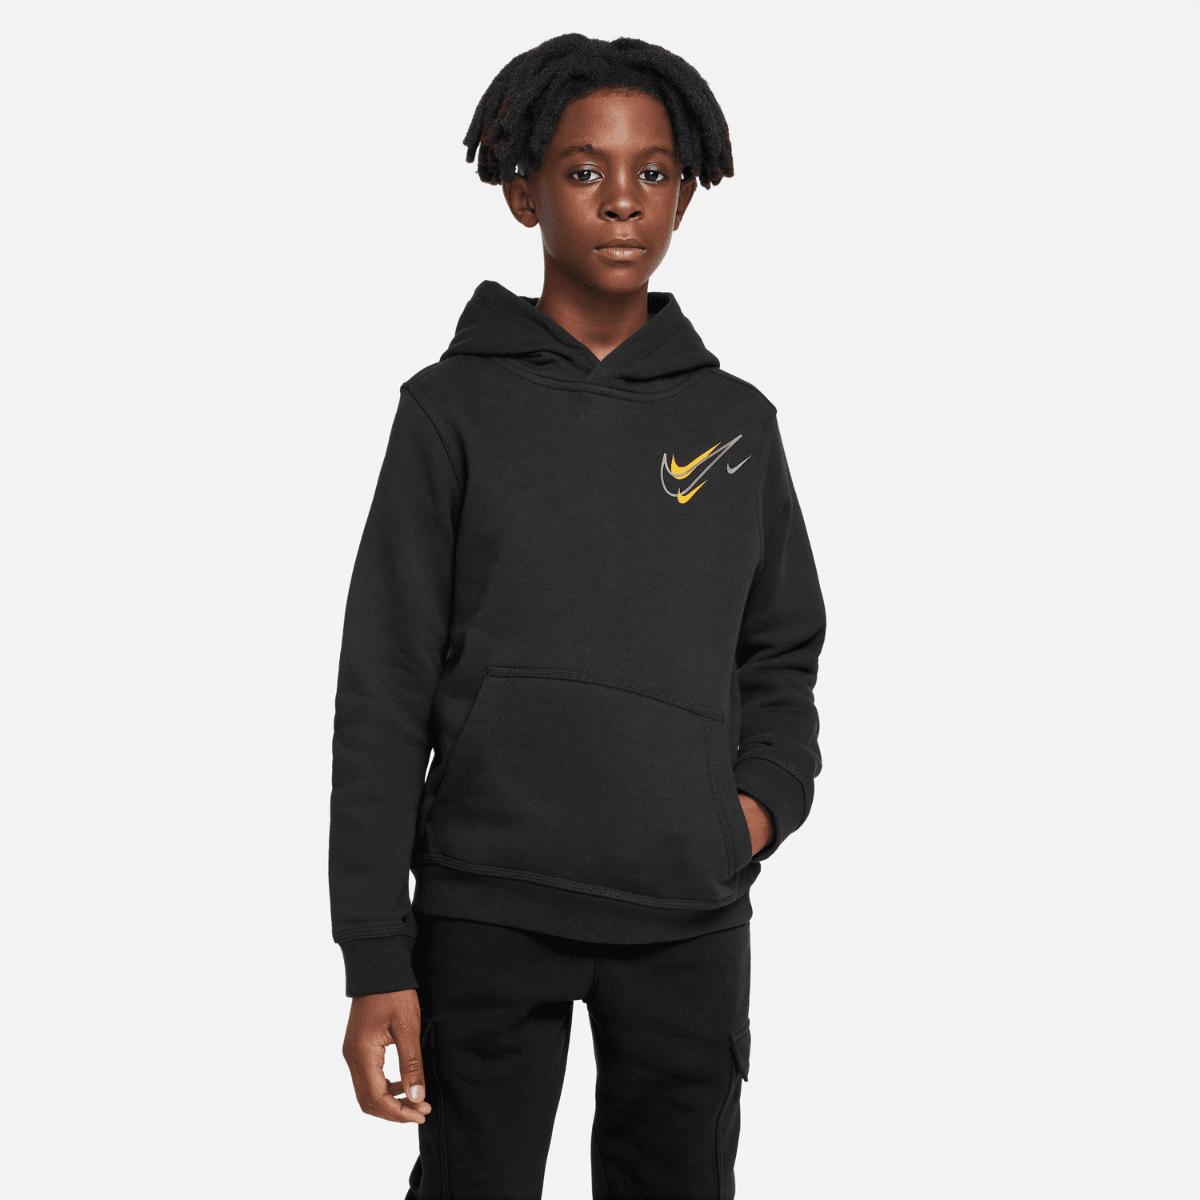 Nike Club Fleece Sweatshirt Kids - Grey/Black/White – Footkorner